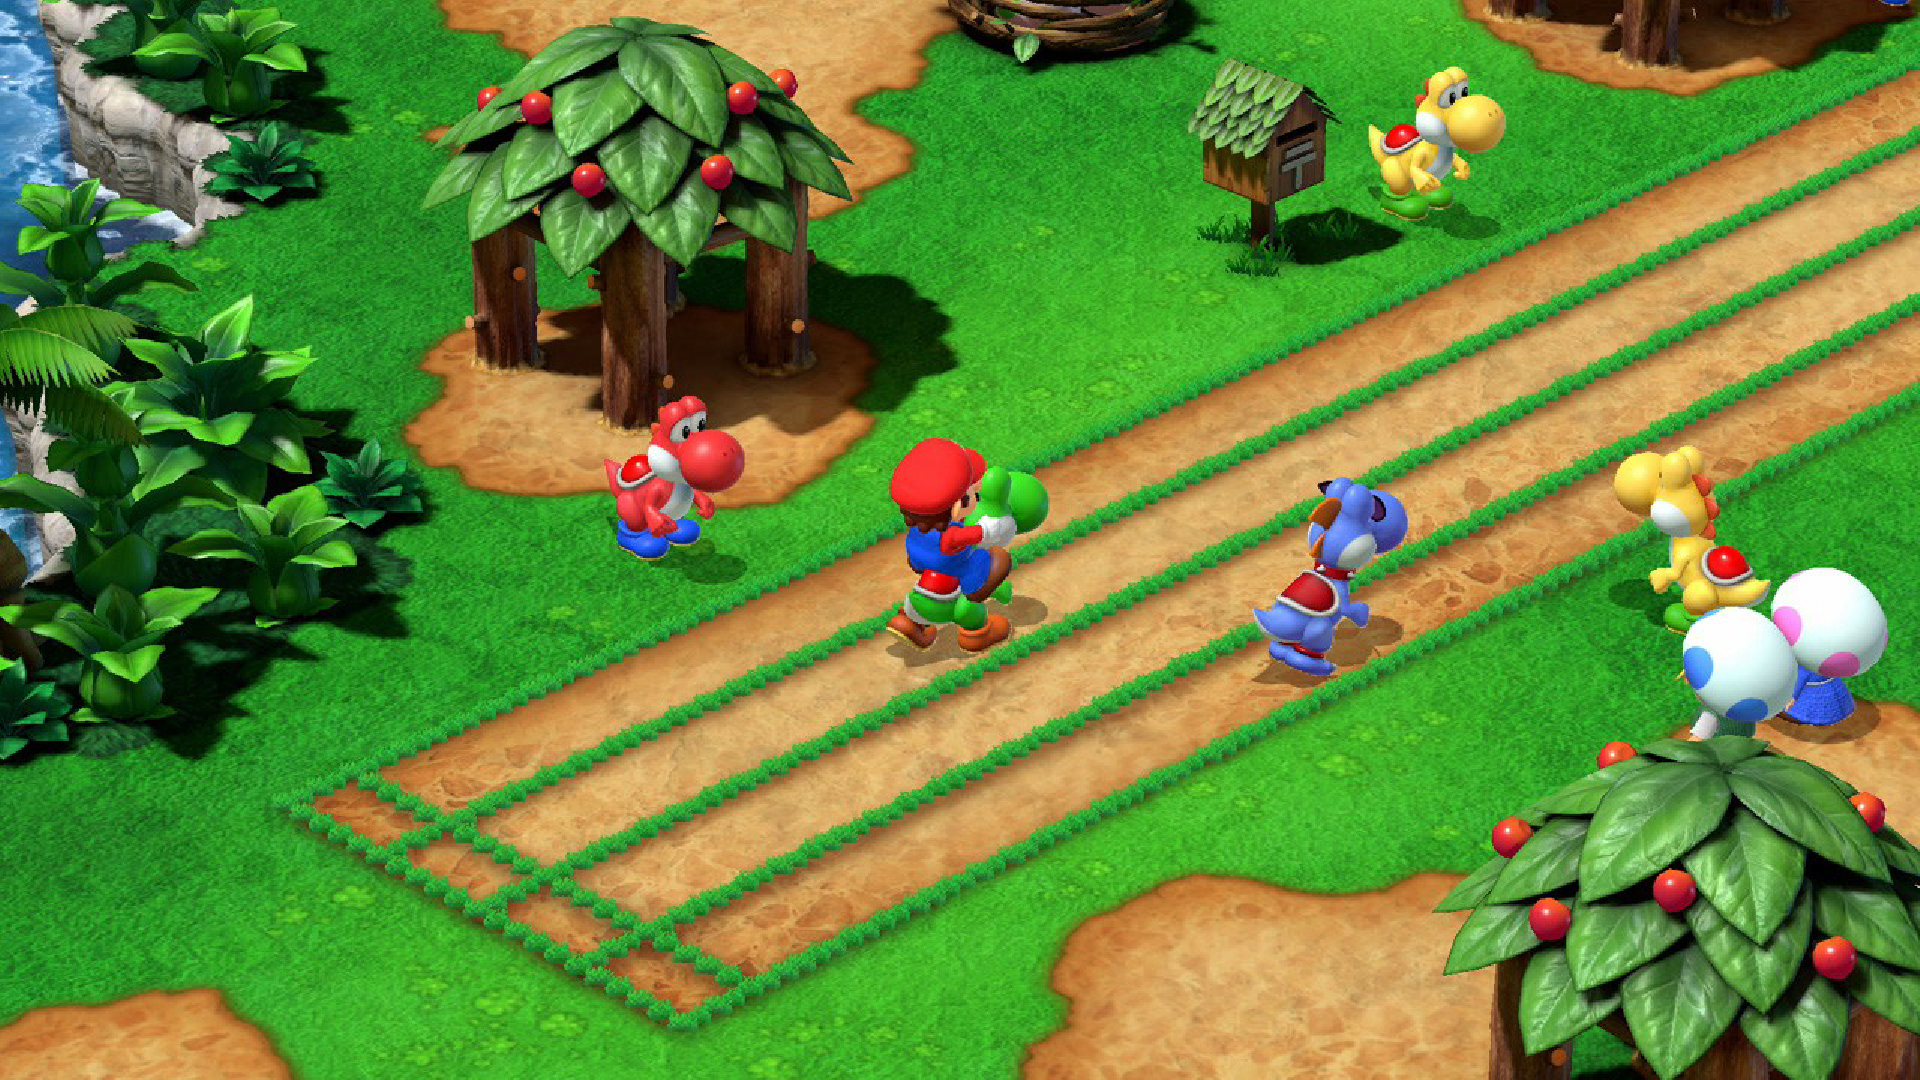 Марио верхом на Йоши в римейке Super Mario RPG